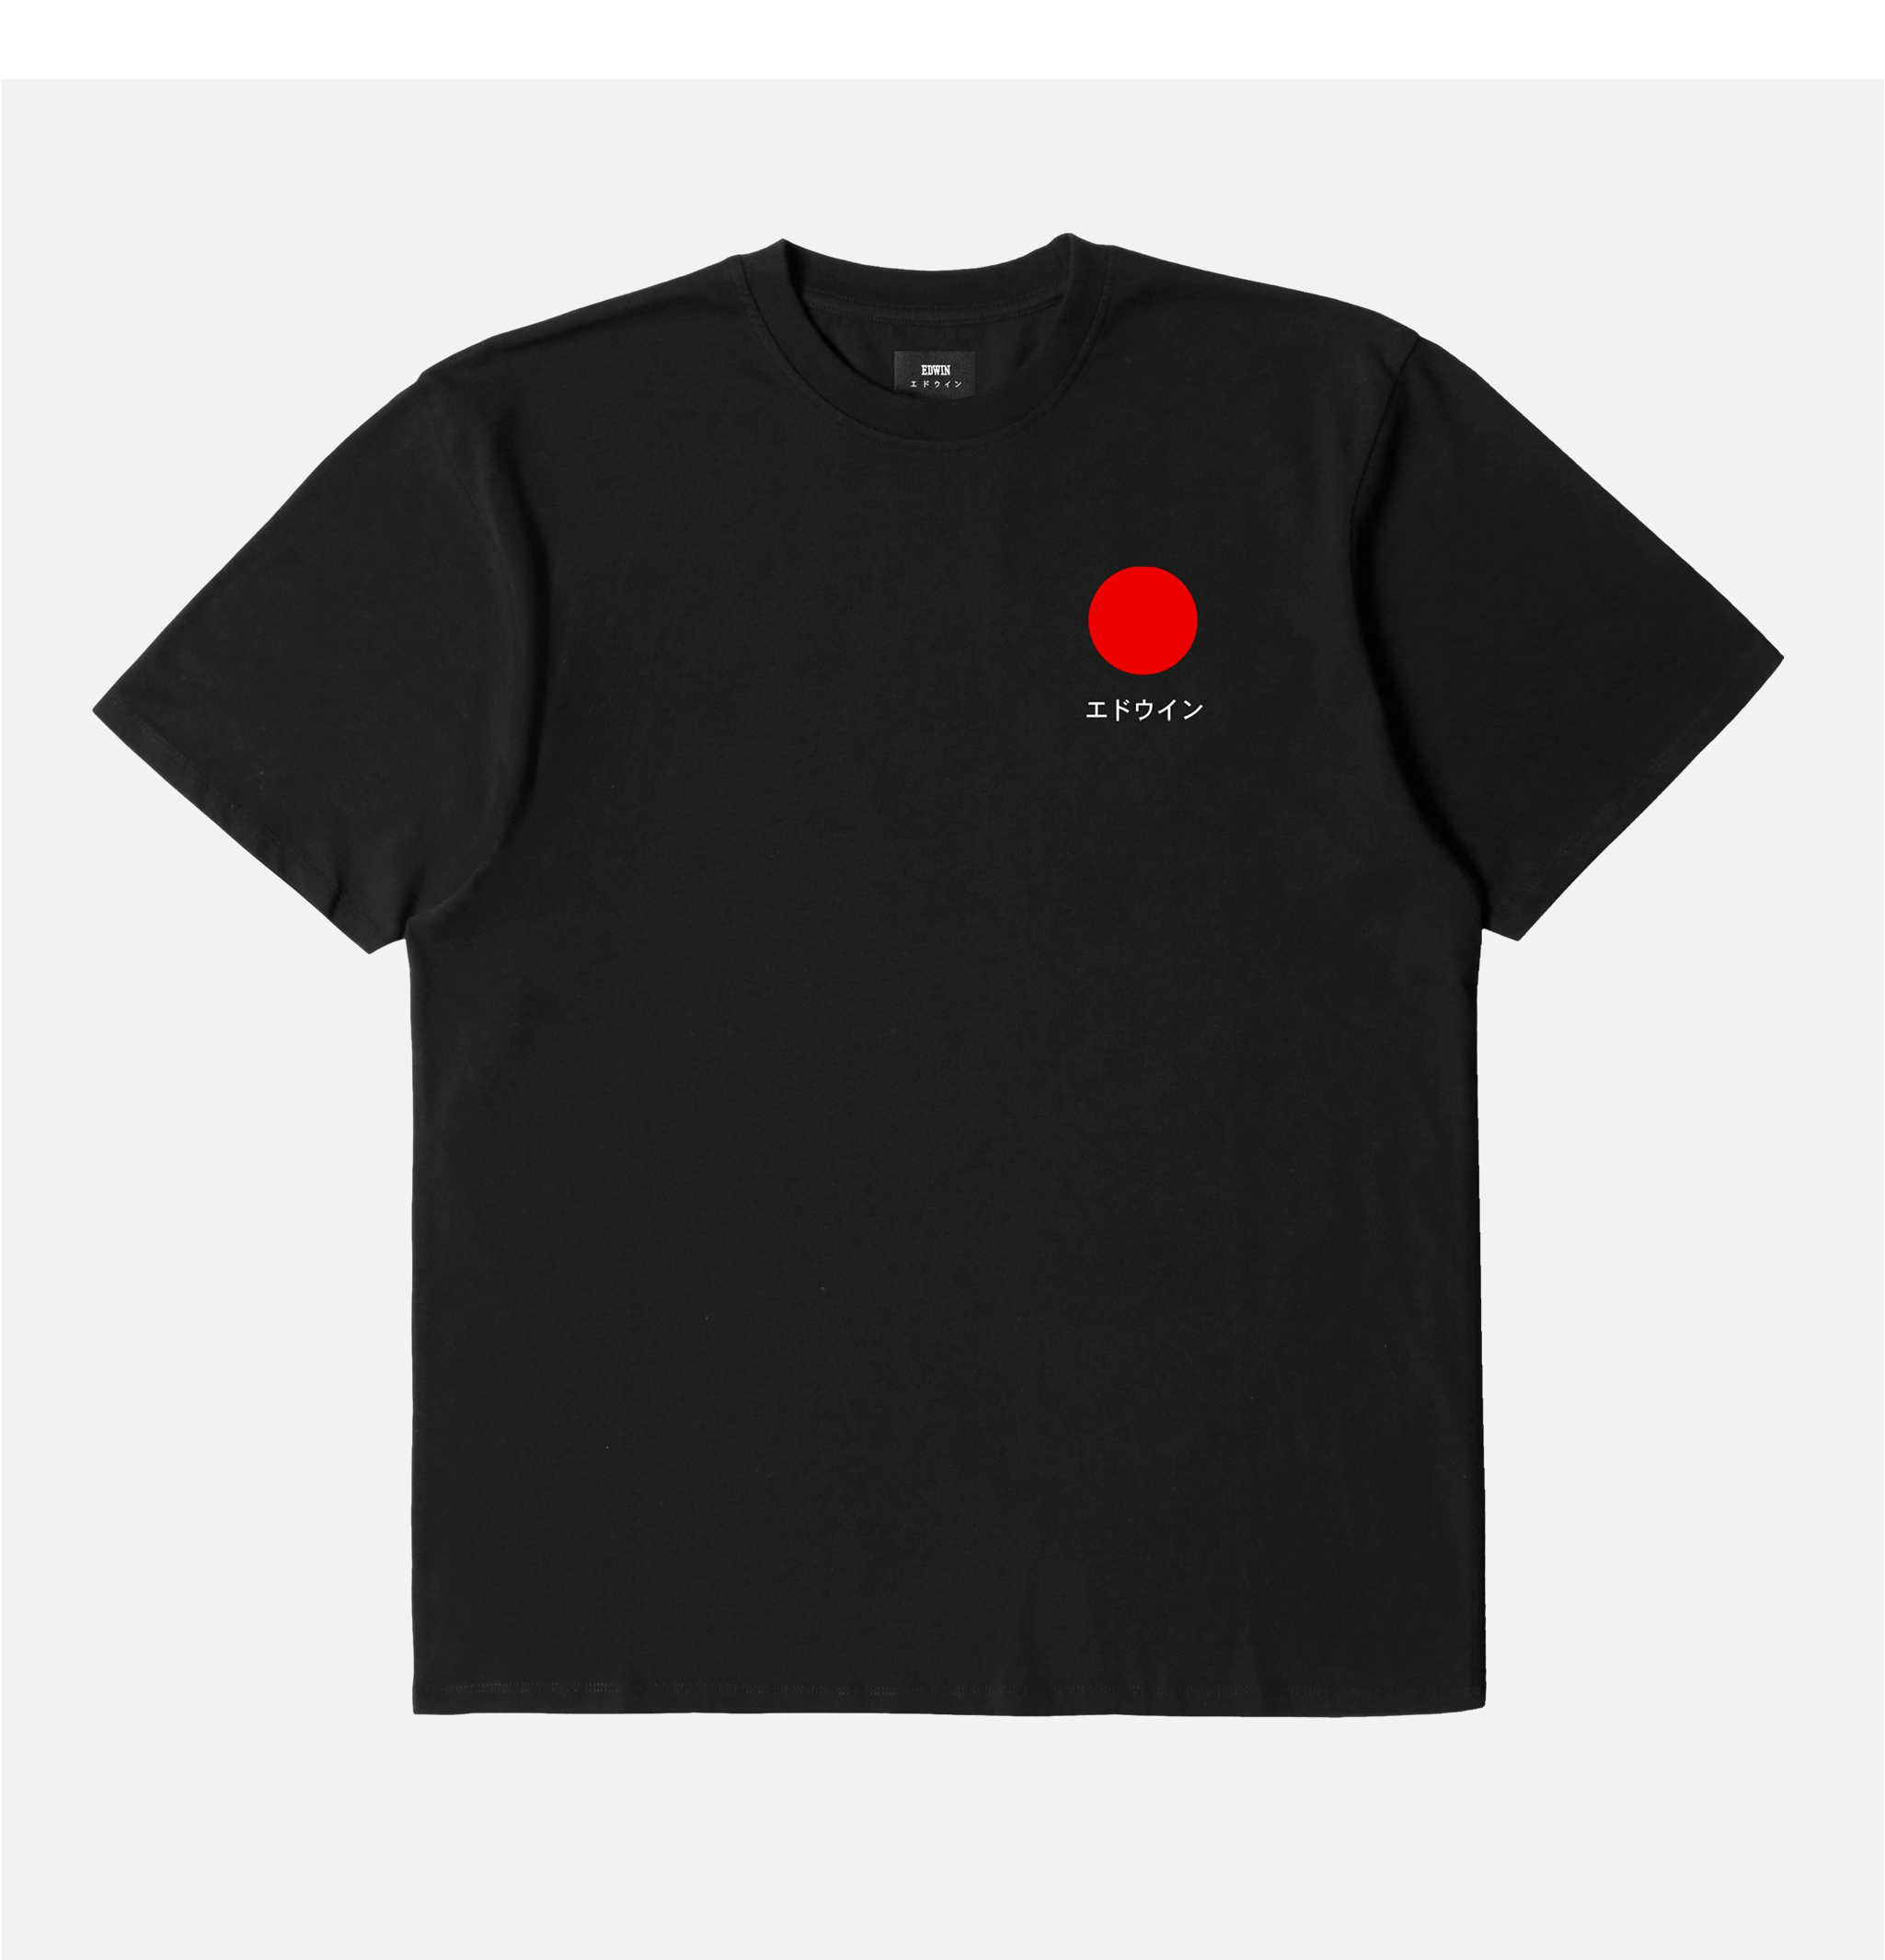 Japanese Sun T-shirt Black